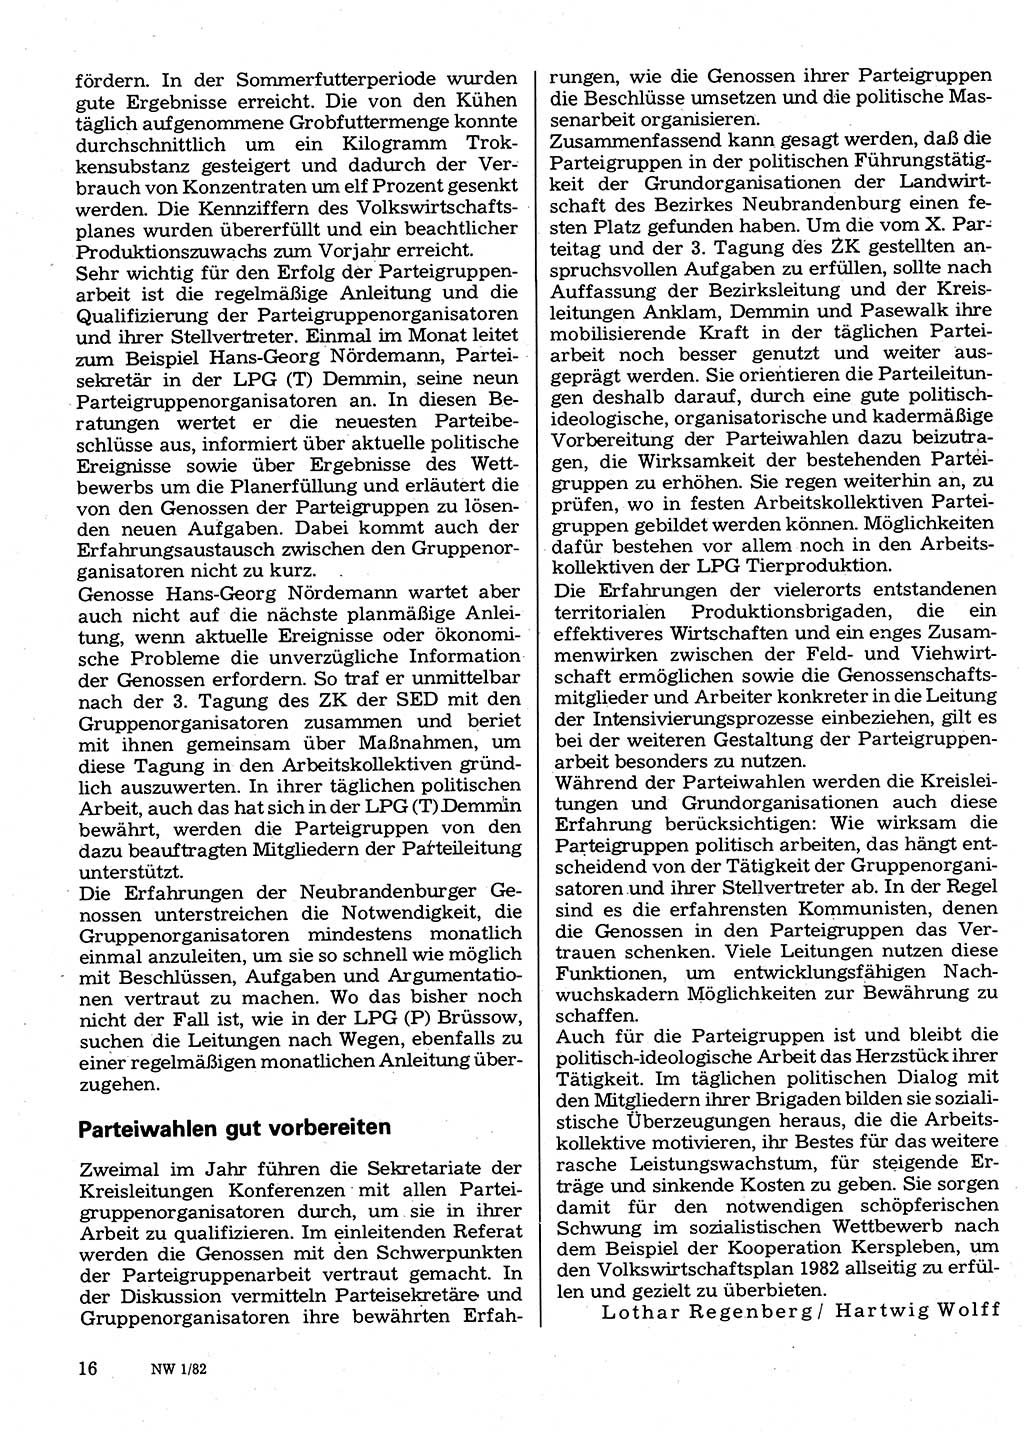 Neuer Weg (NW), Organ des Zentralkomitees (ZK) der SED (Sozialistische Einheitspartei Deutschlands) für Fragen des Parteilebens, 37. Jahrgang [Deutsche Demokratische Republik (DDR)] 1982, Seite 16 (NW ZK SED DDR 1982, S. 16)